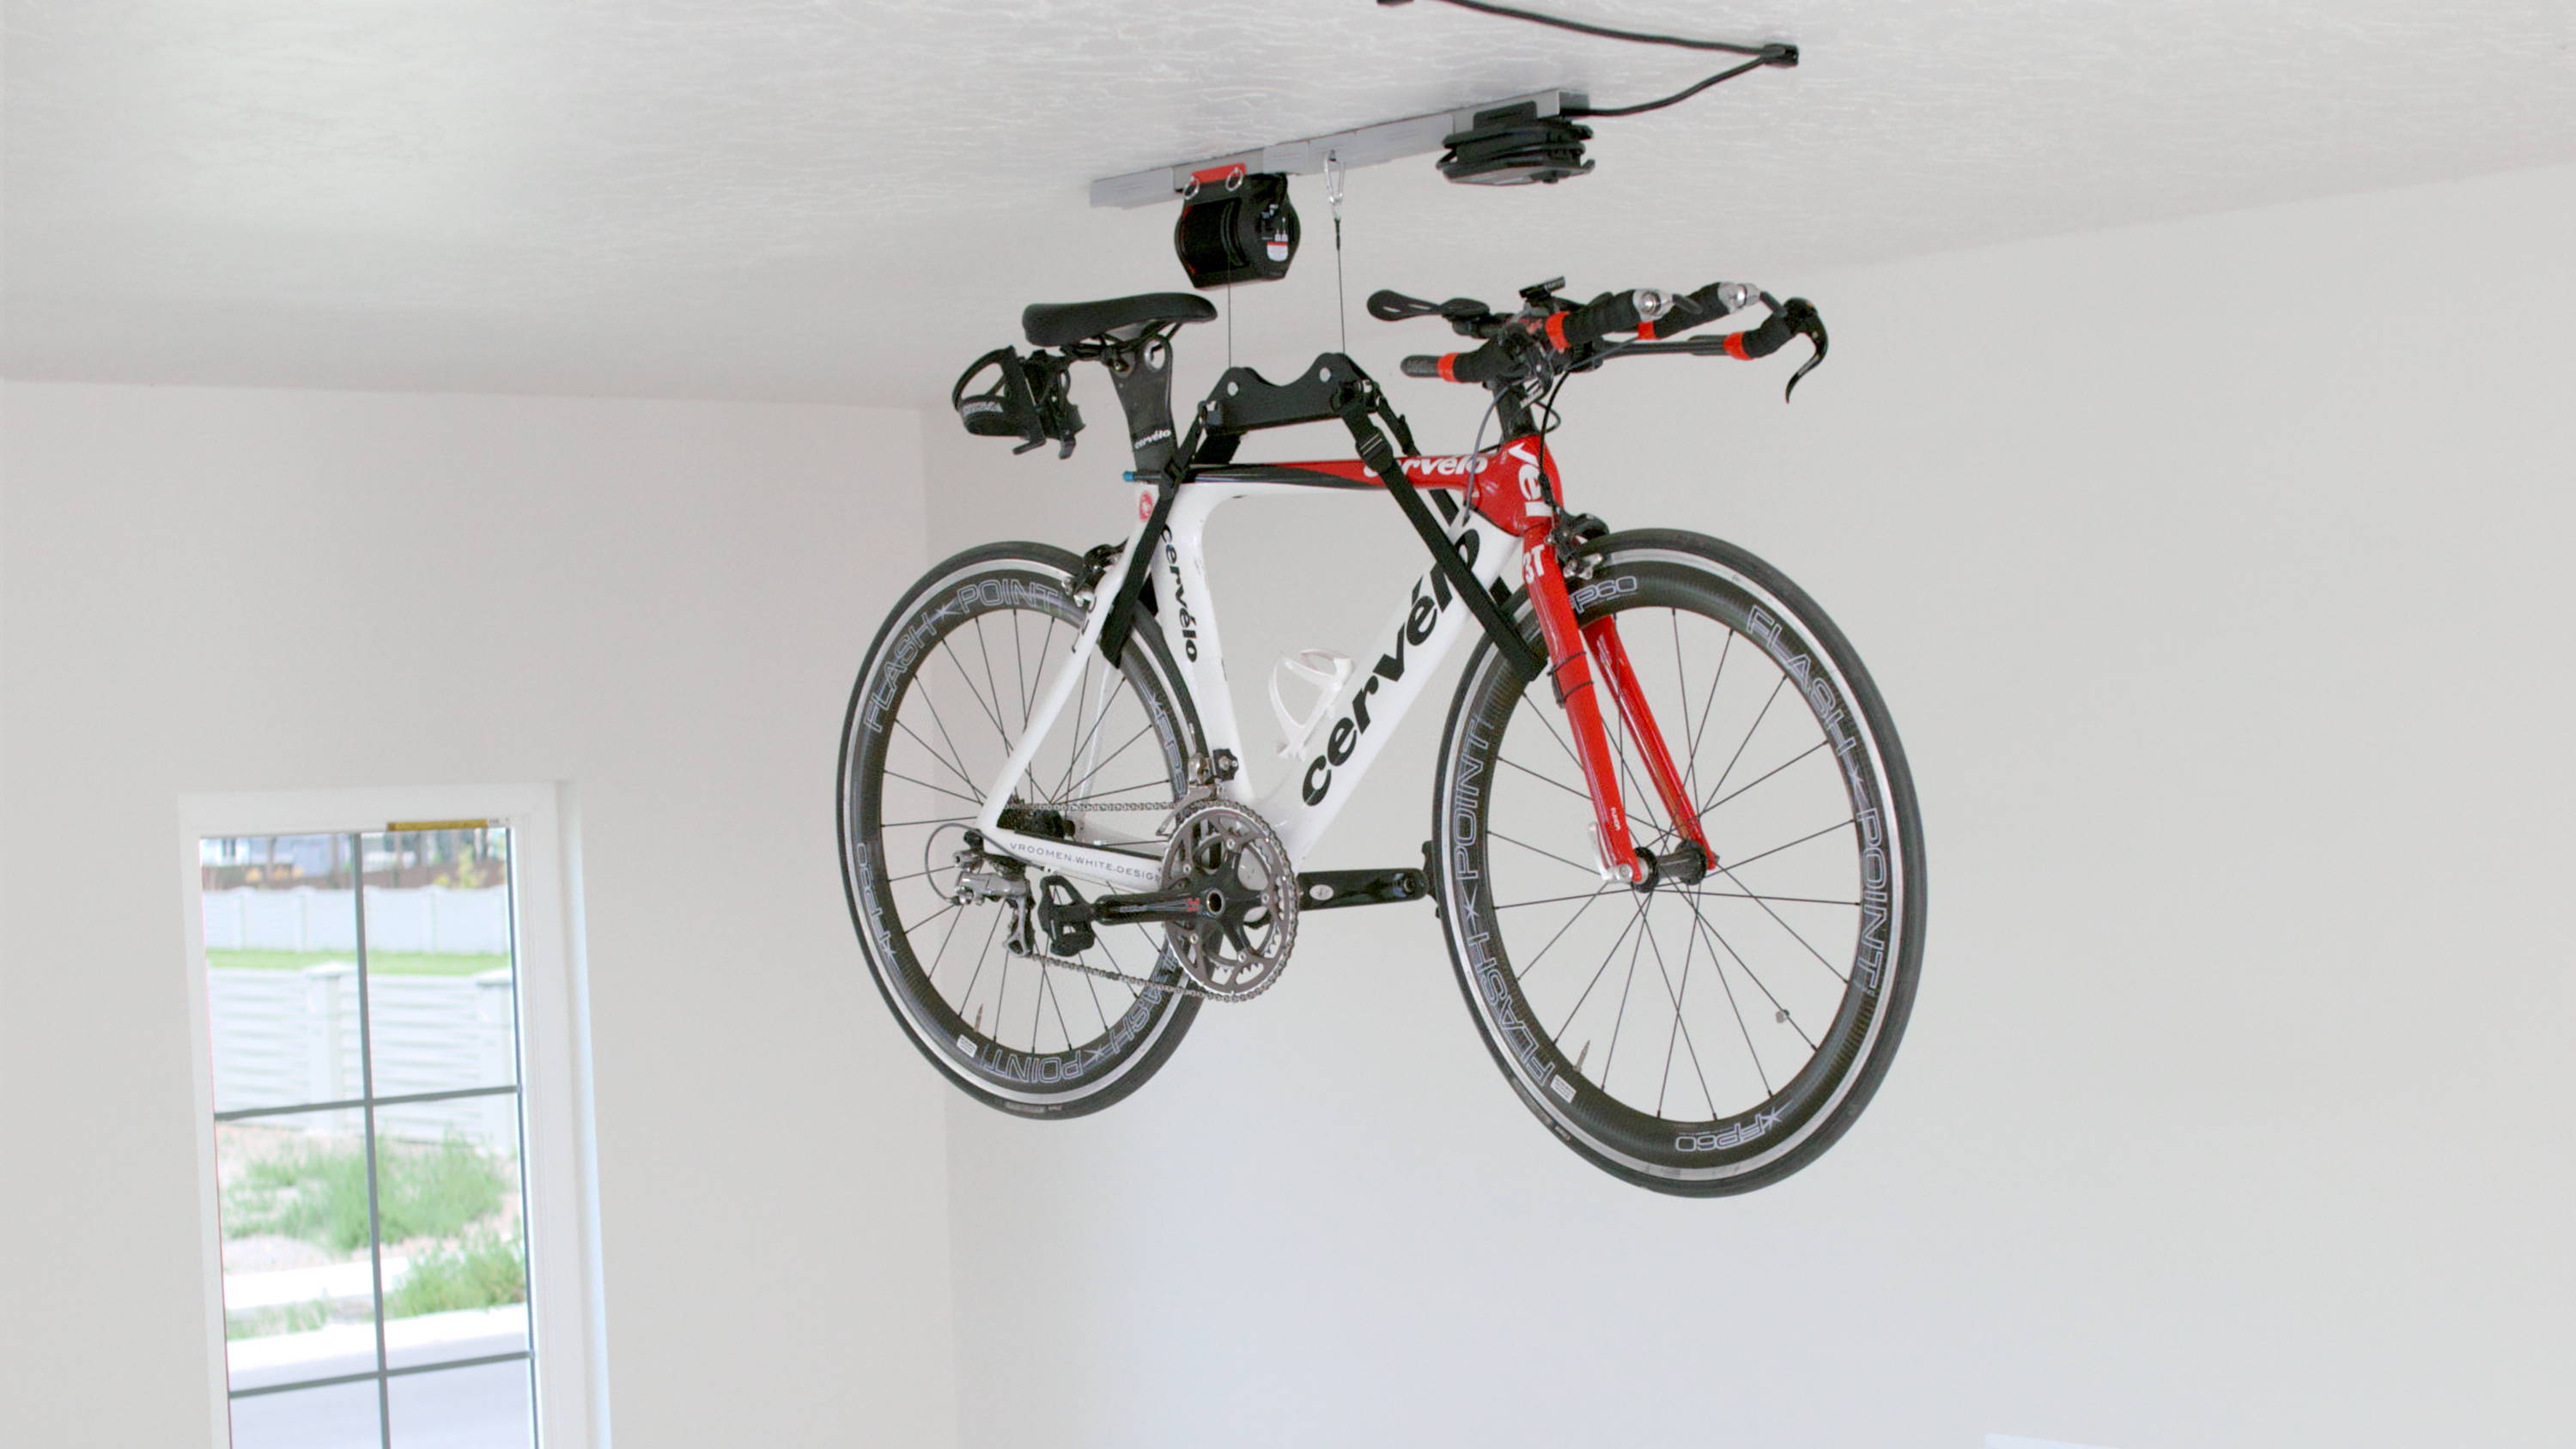 SmarterHome Single-Bike Lifter hoisting a bike in the air